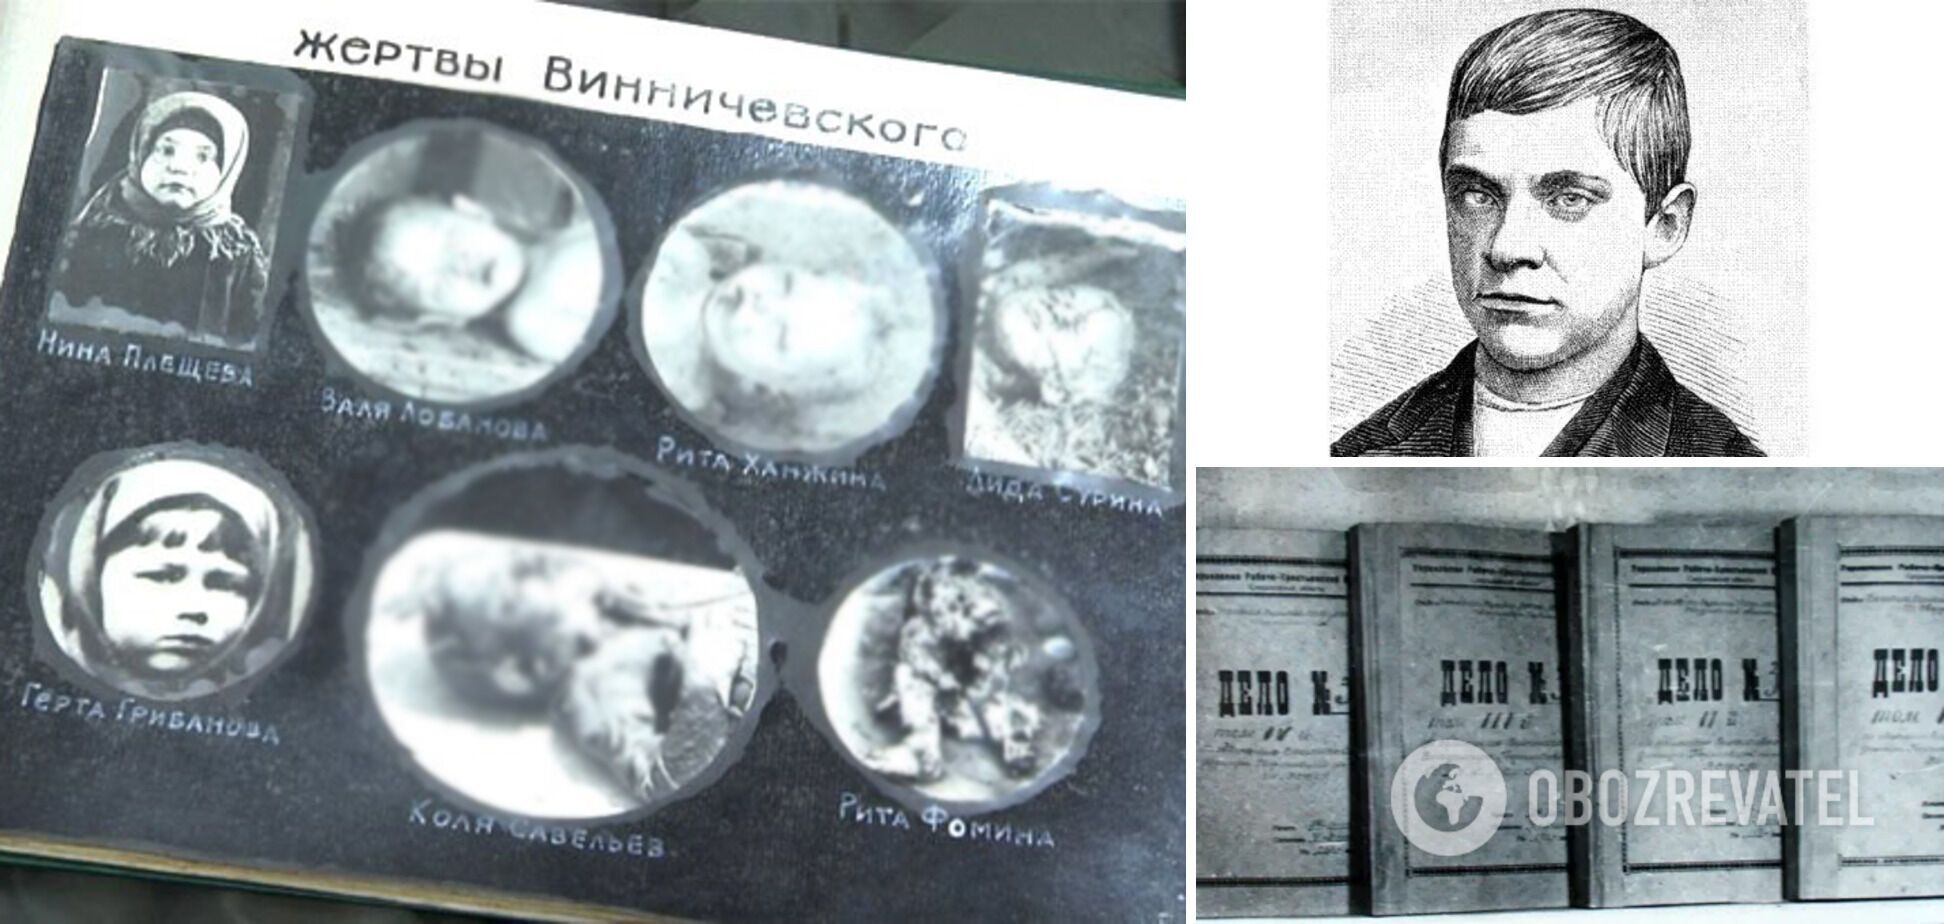 Жертви Винничевського, його портрет, зроблений під час слідства, і чотири томи кримінальної справи щодо маніяка